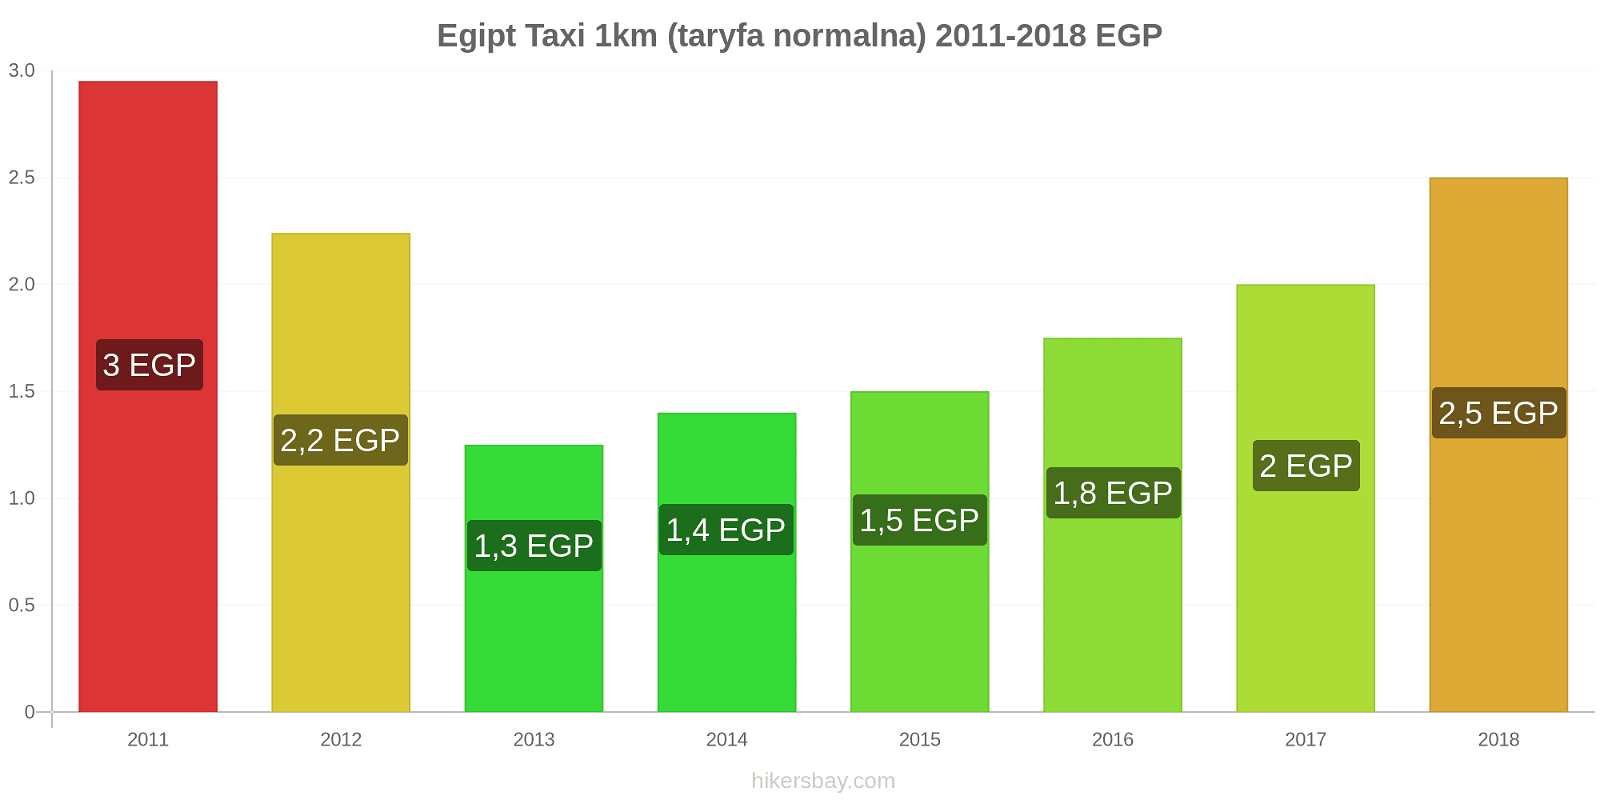 Egipt zmiany cen Taxi 1km (taryfa normalna) hikersbay.com